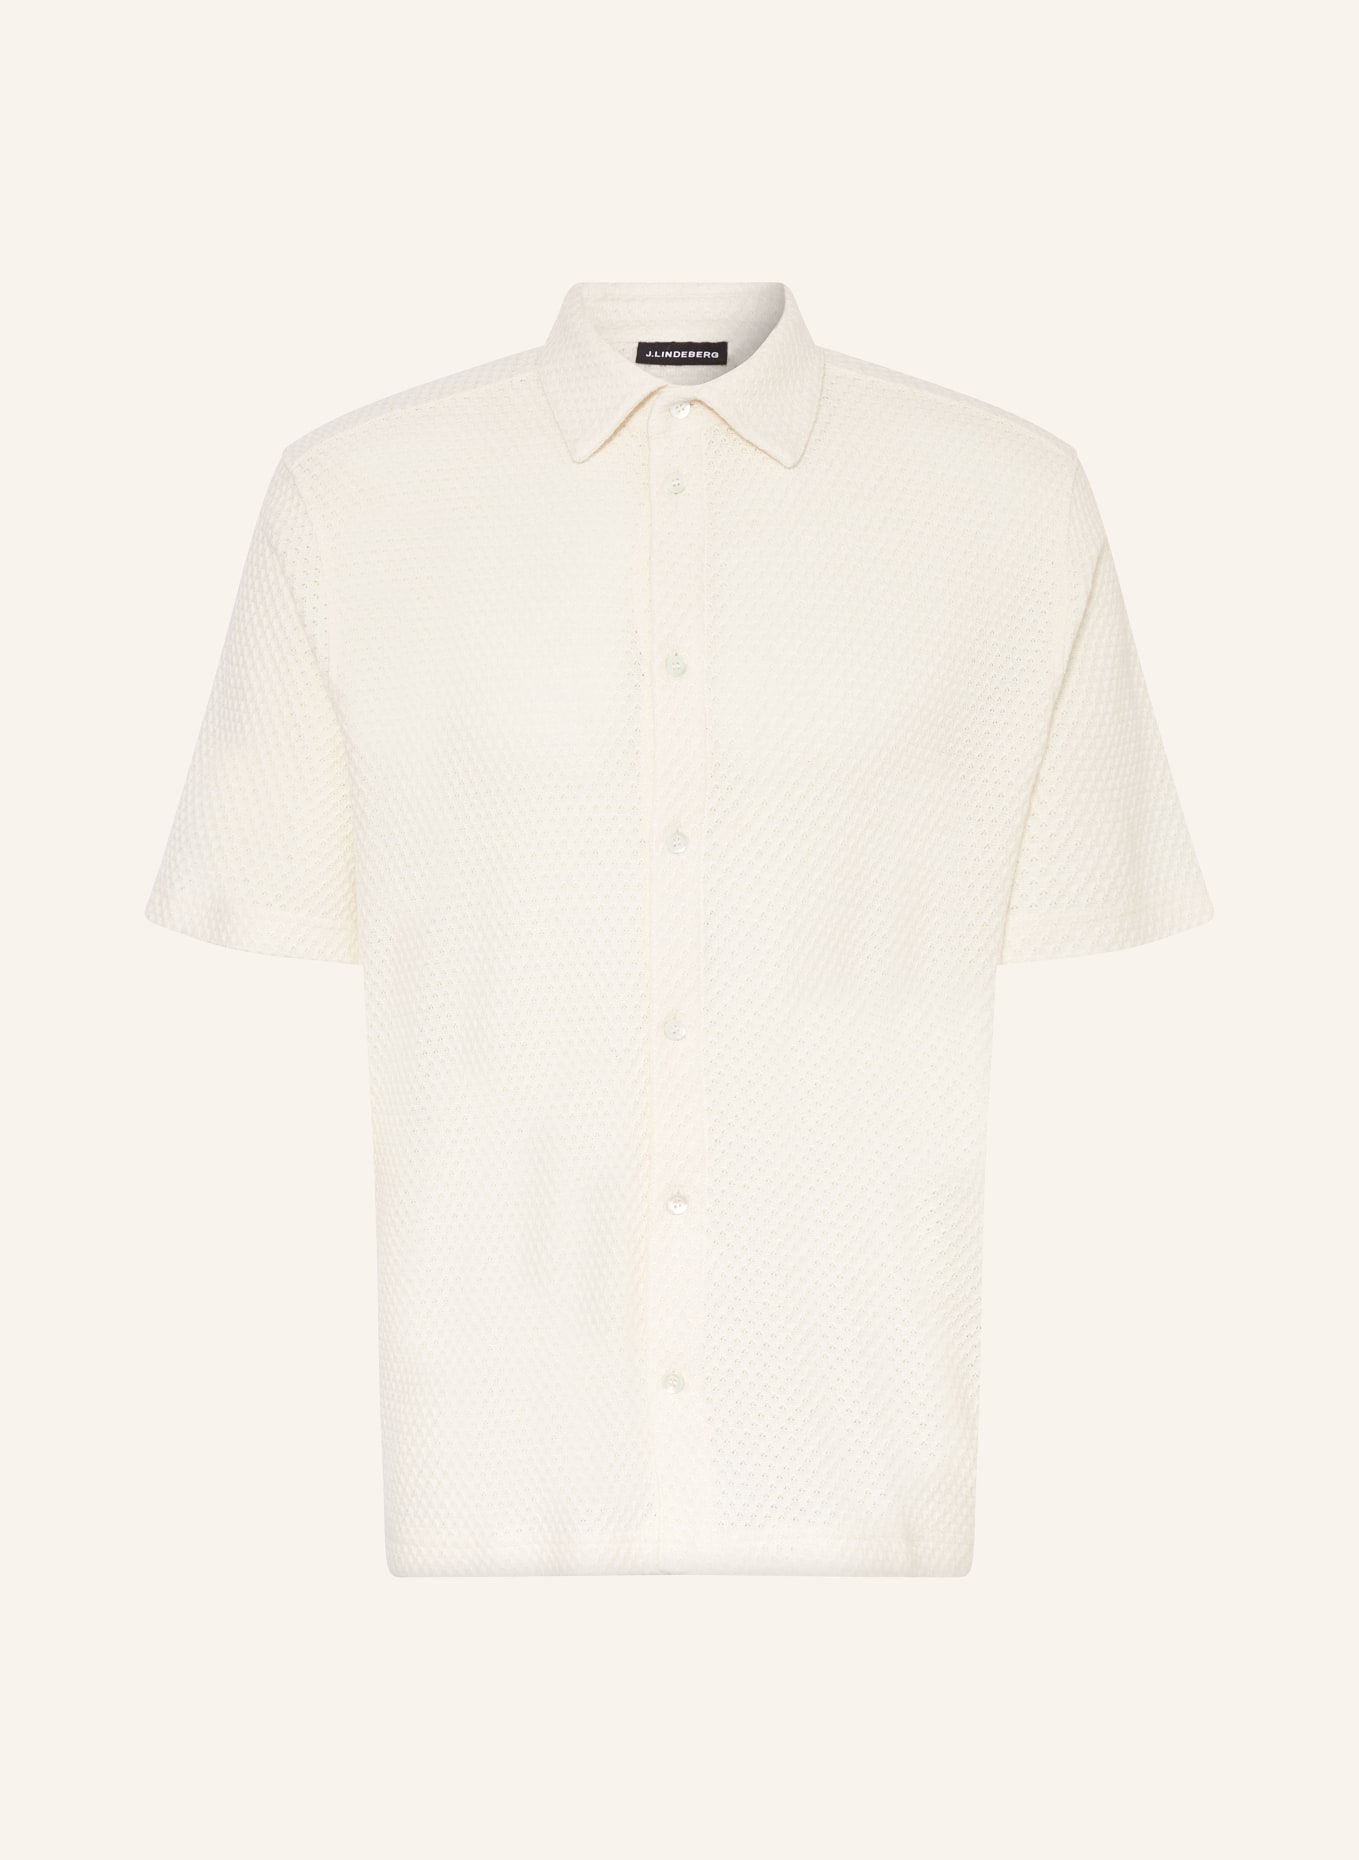 J.LINDEBERG Knit shirt regular fit, Color: WHITE (Image 1)